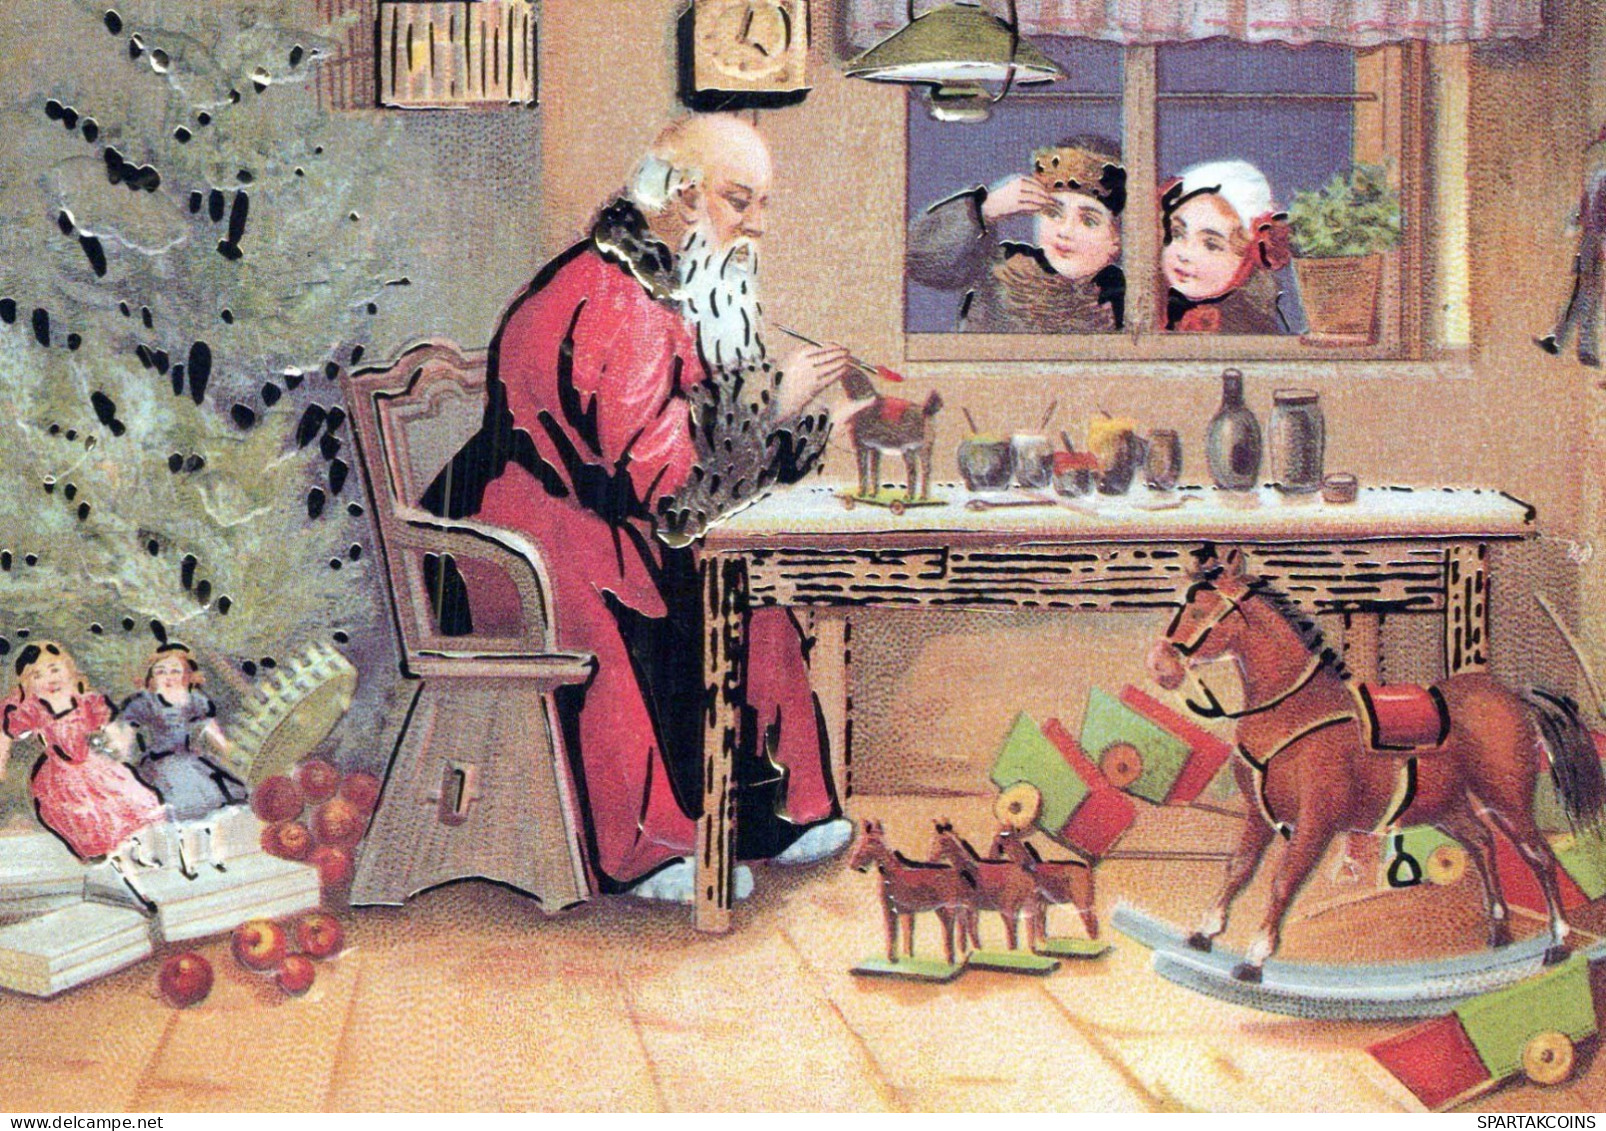 WEIHNACHTSMANN SANTA CLAUS Neujahr Weihnachten Vintage Ansichtskarte Postkarte CPSM #PBB063.DE - Santa Claus